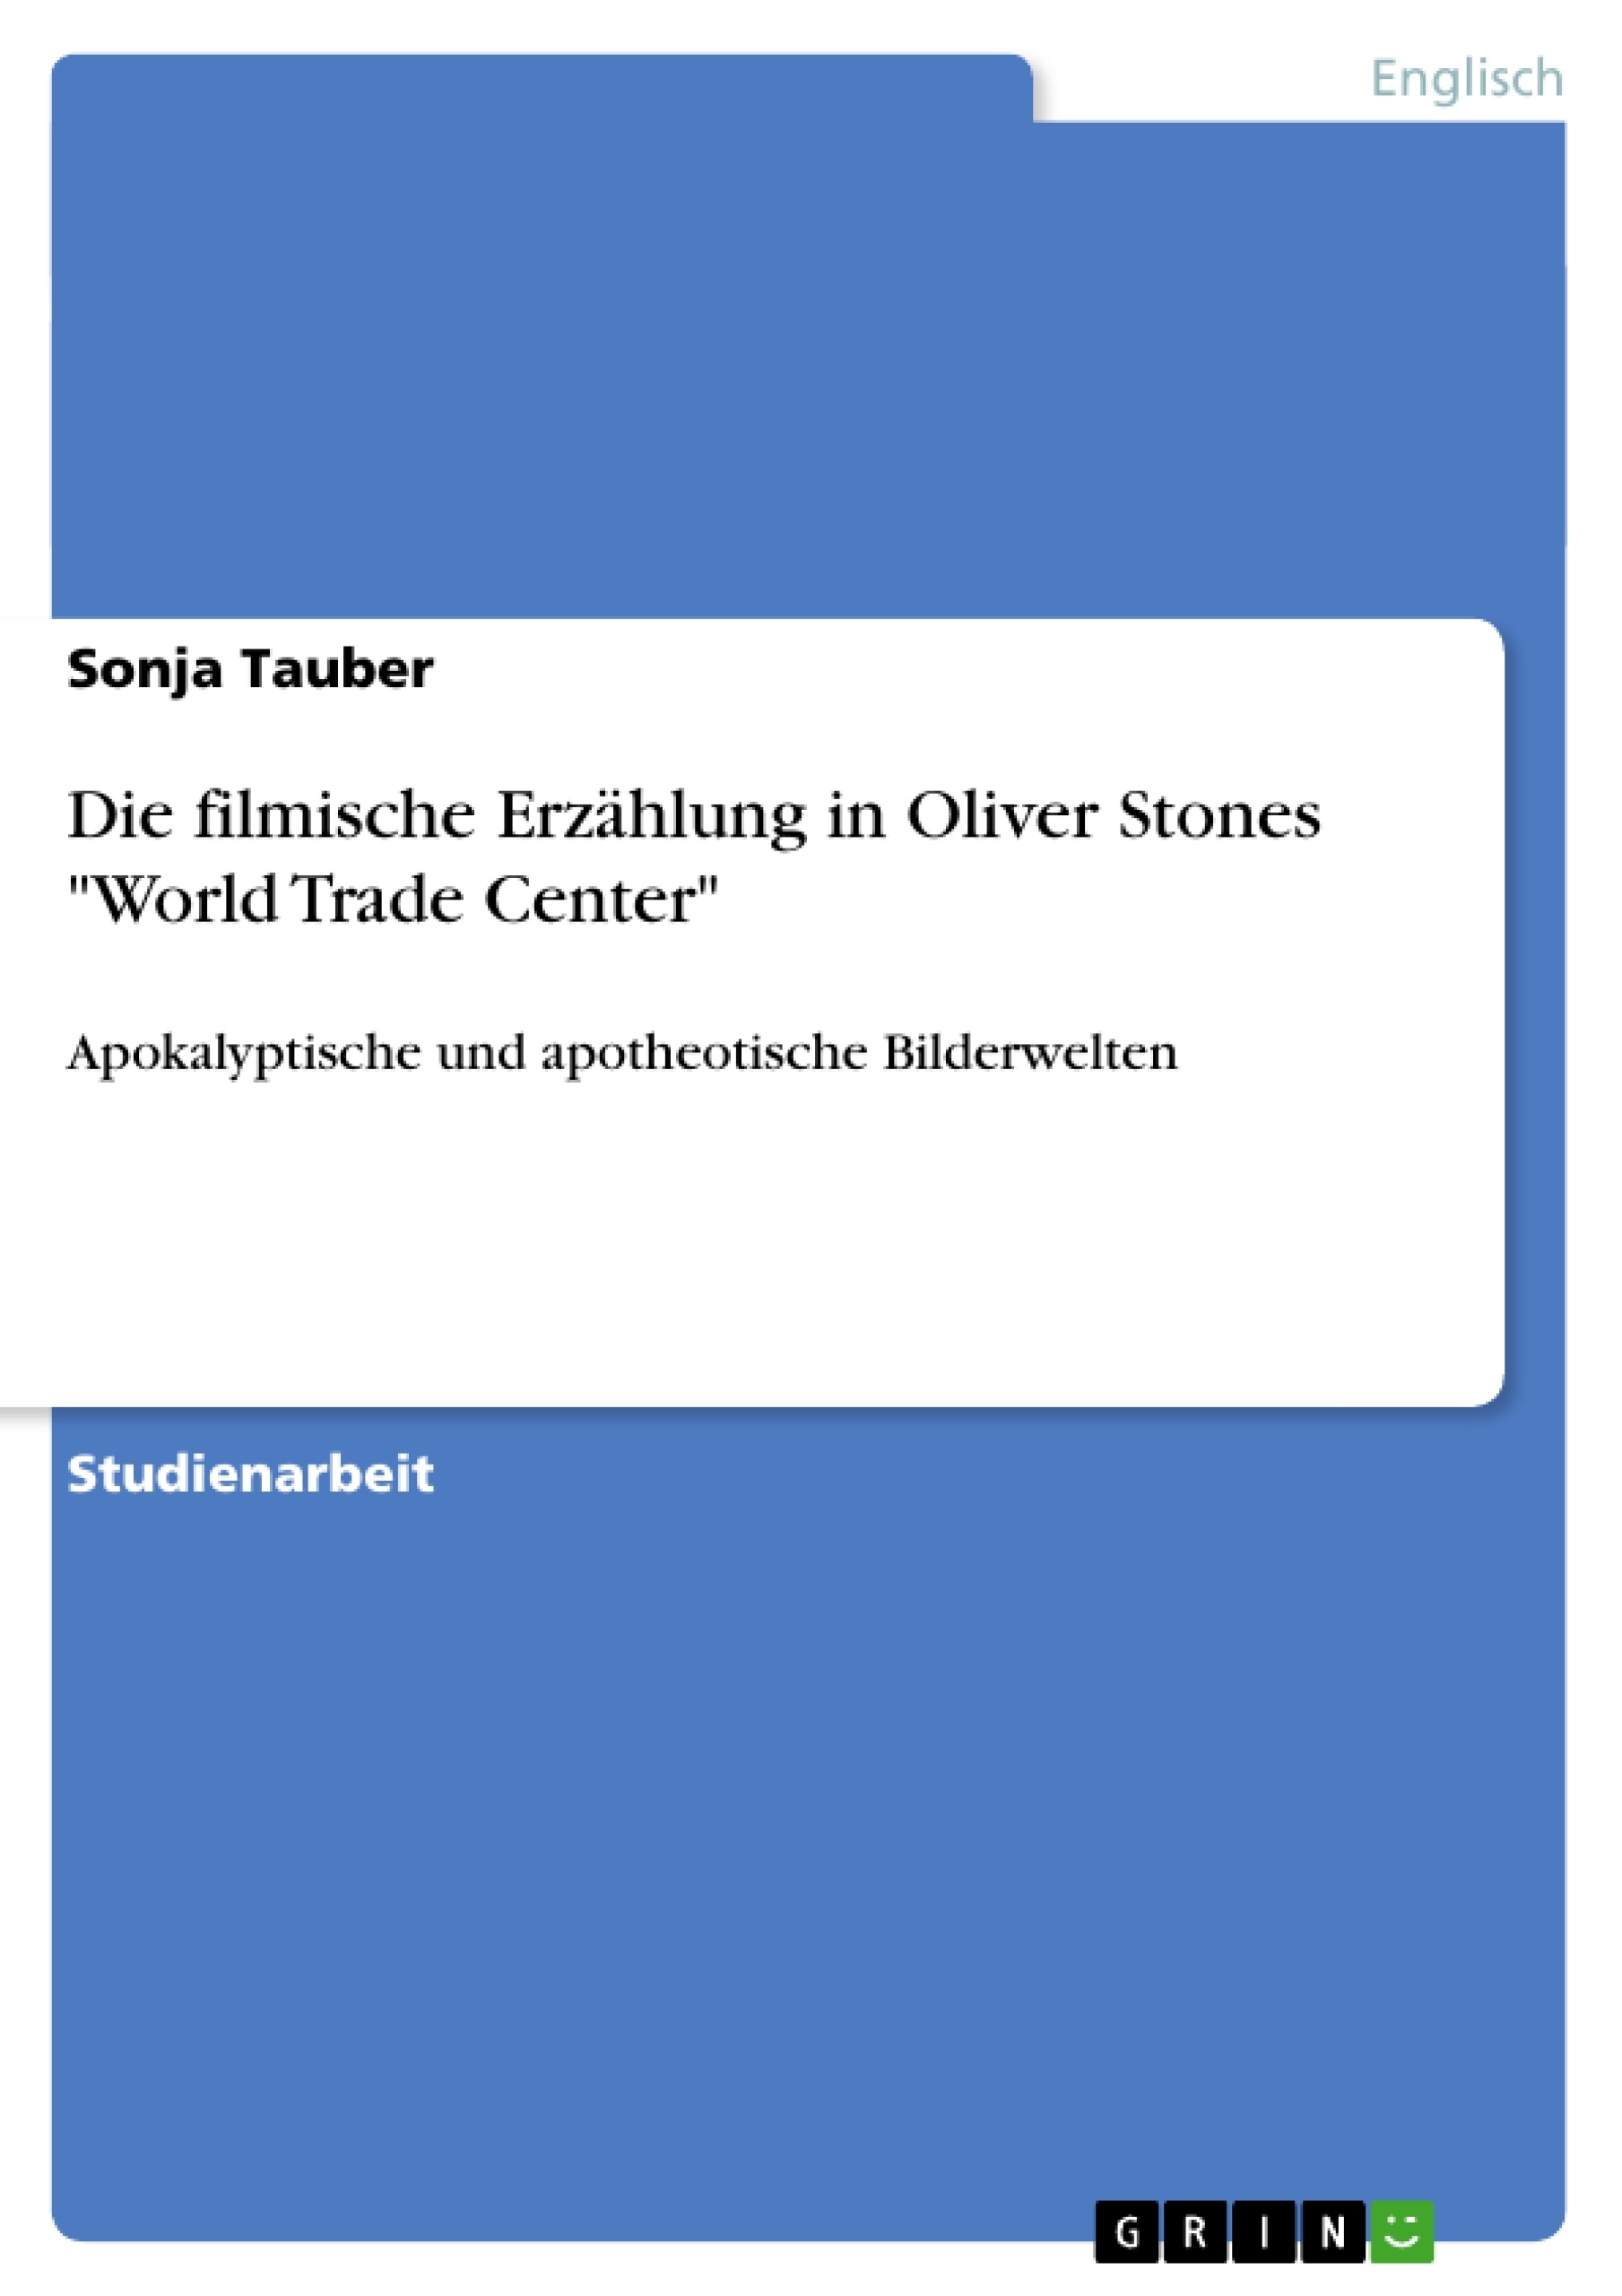 Titel: Die filmische Erzählung in Oliver Stones "World Trade Center"